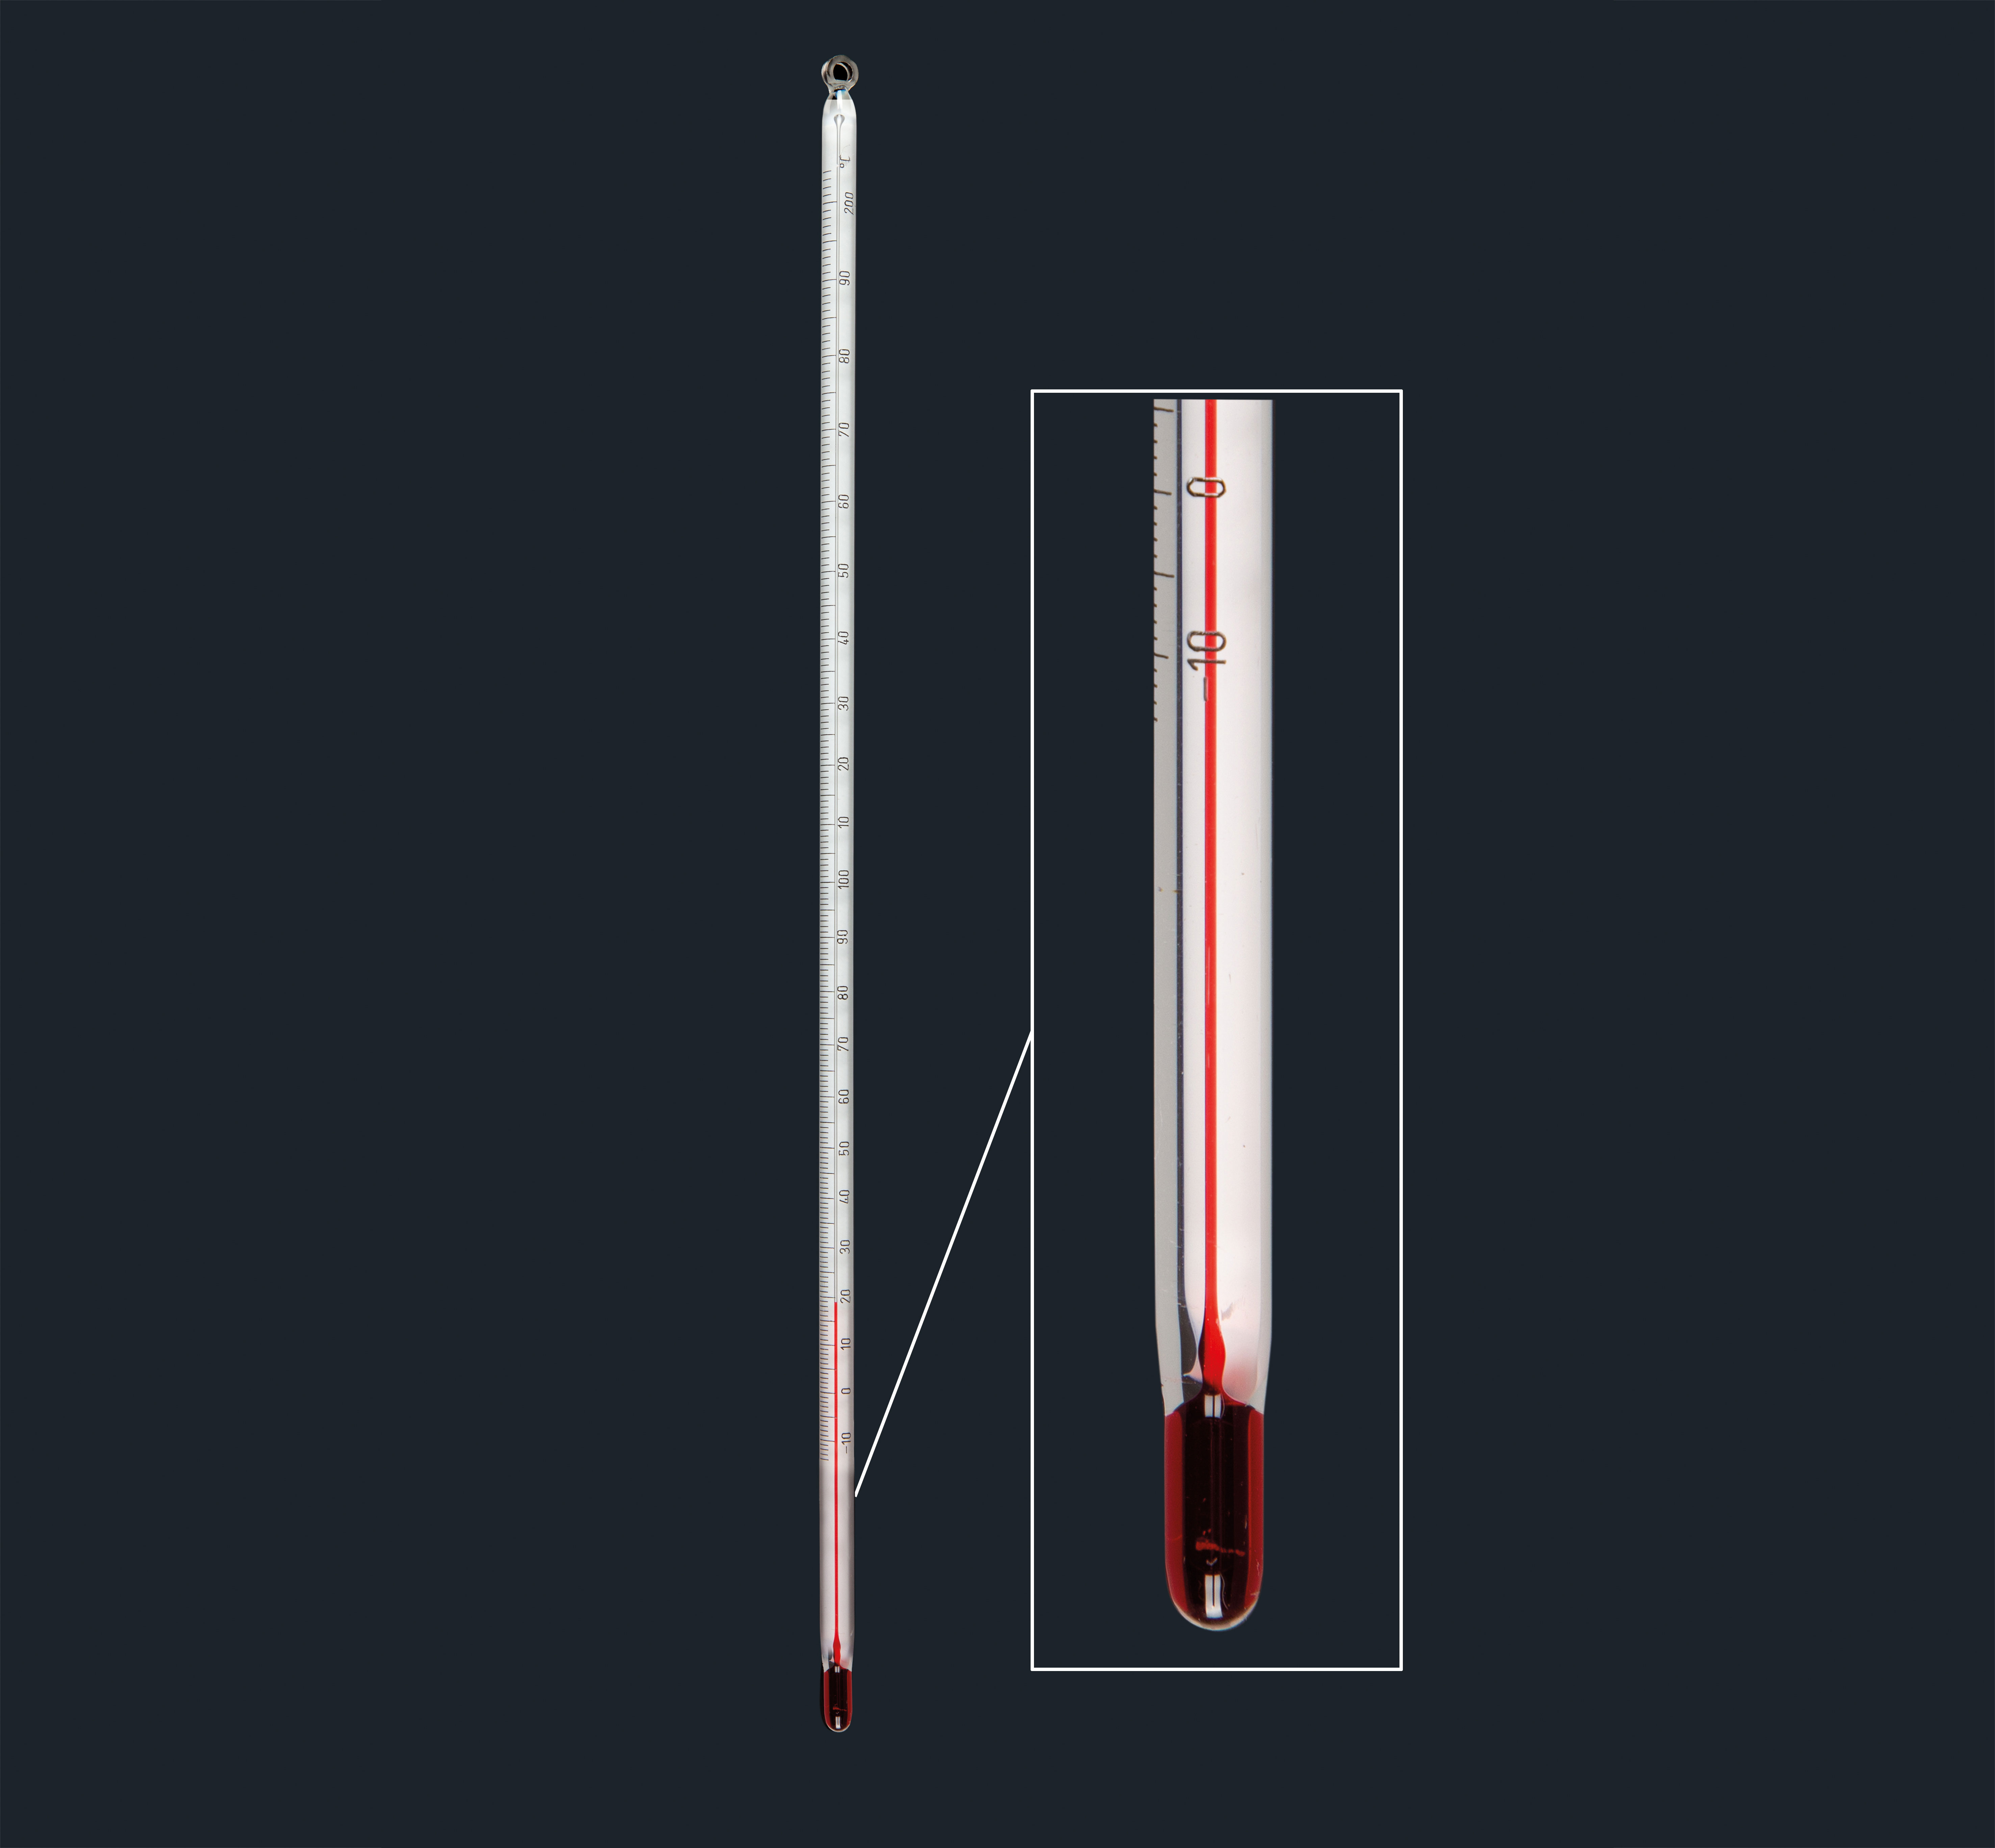 Termómetro de varilla franja blanca para uso general, líquido rojo, 5,5 a 6,5 mmø. Rango de medida (°C): - 10 a + 100. Longitud (mm): 260. División (°C): 1 .Sin certificado. Amarell&#x0D;